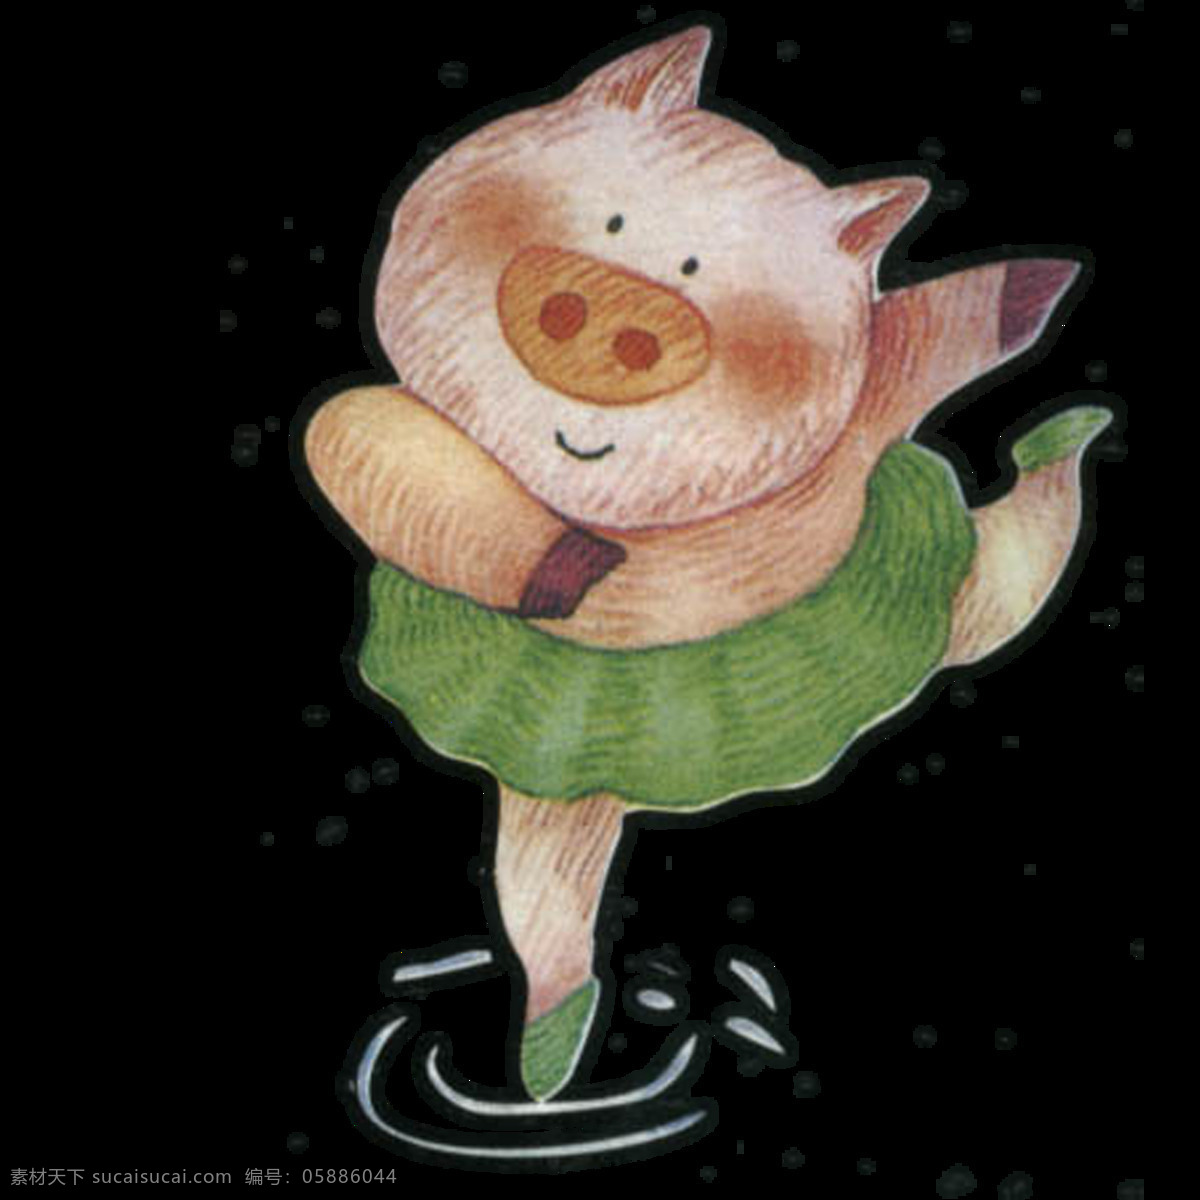 唯美 创意 猪 绘画 逗趣猪猪 生动 美观 鲜明